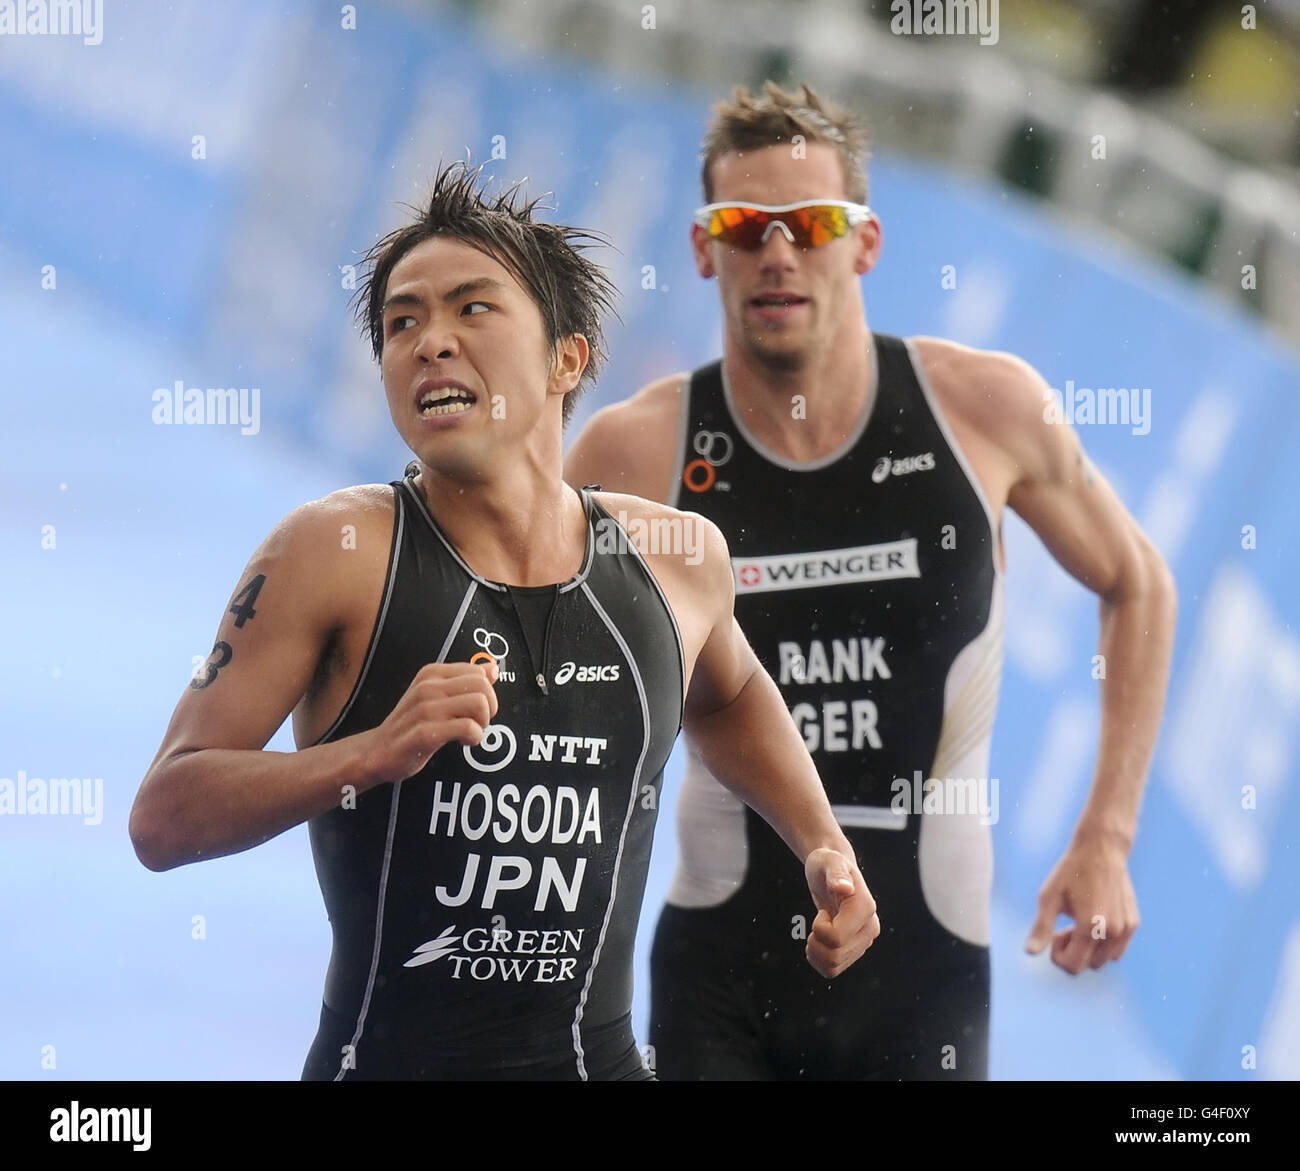 (Da sinistra a destra) Yuichi Hosoda del Giappone e Sebastian Rank della Germania durante la Dextro Energy Triathlon ITU World Championship Series a Hyde Park, Londra. Foto Stock